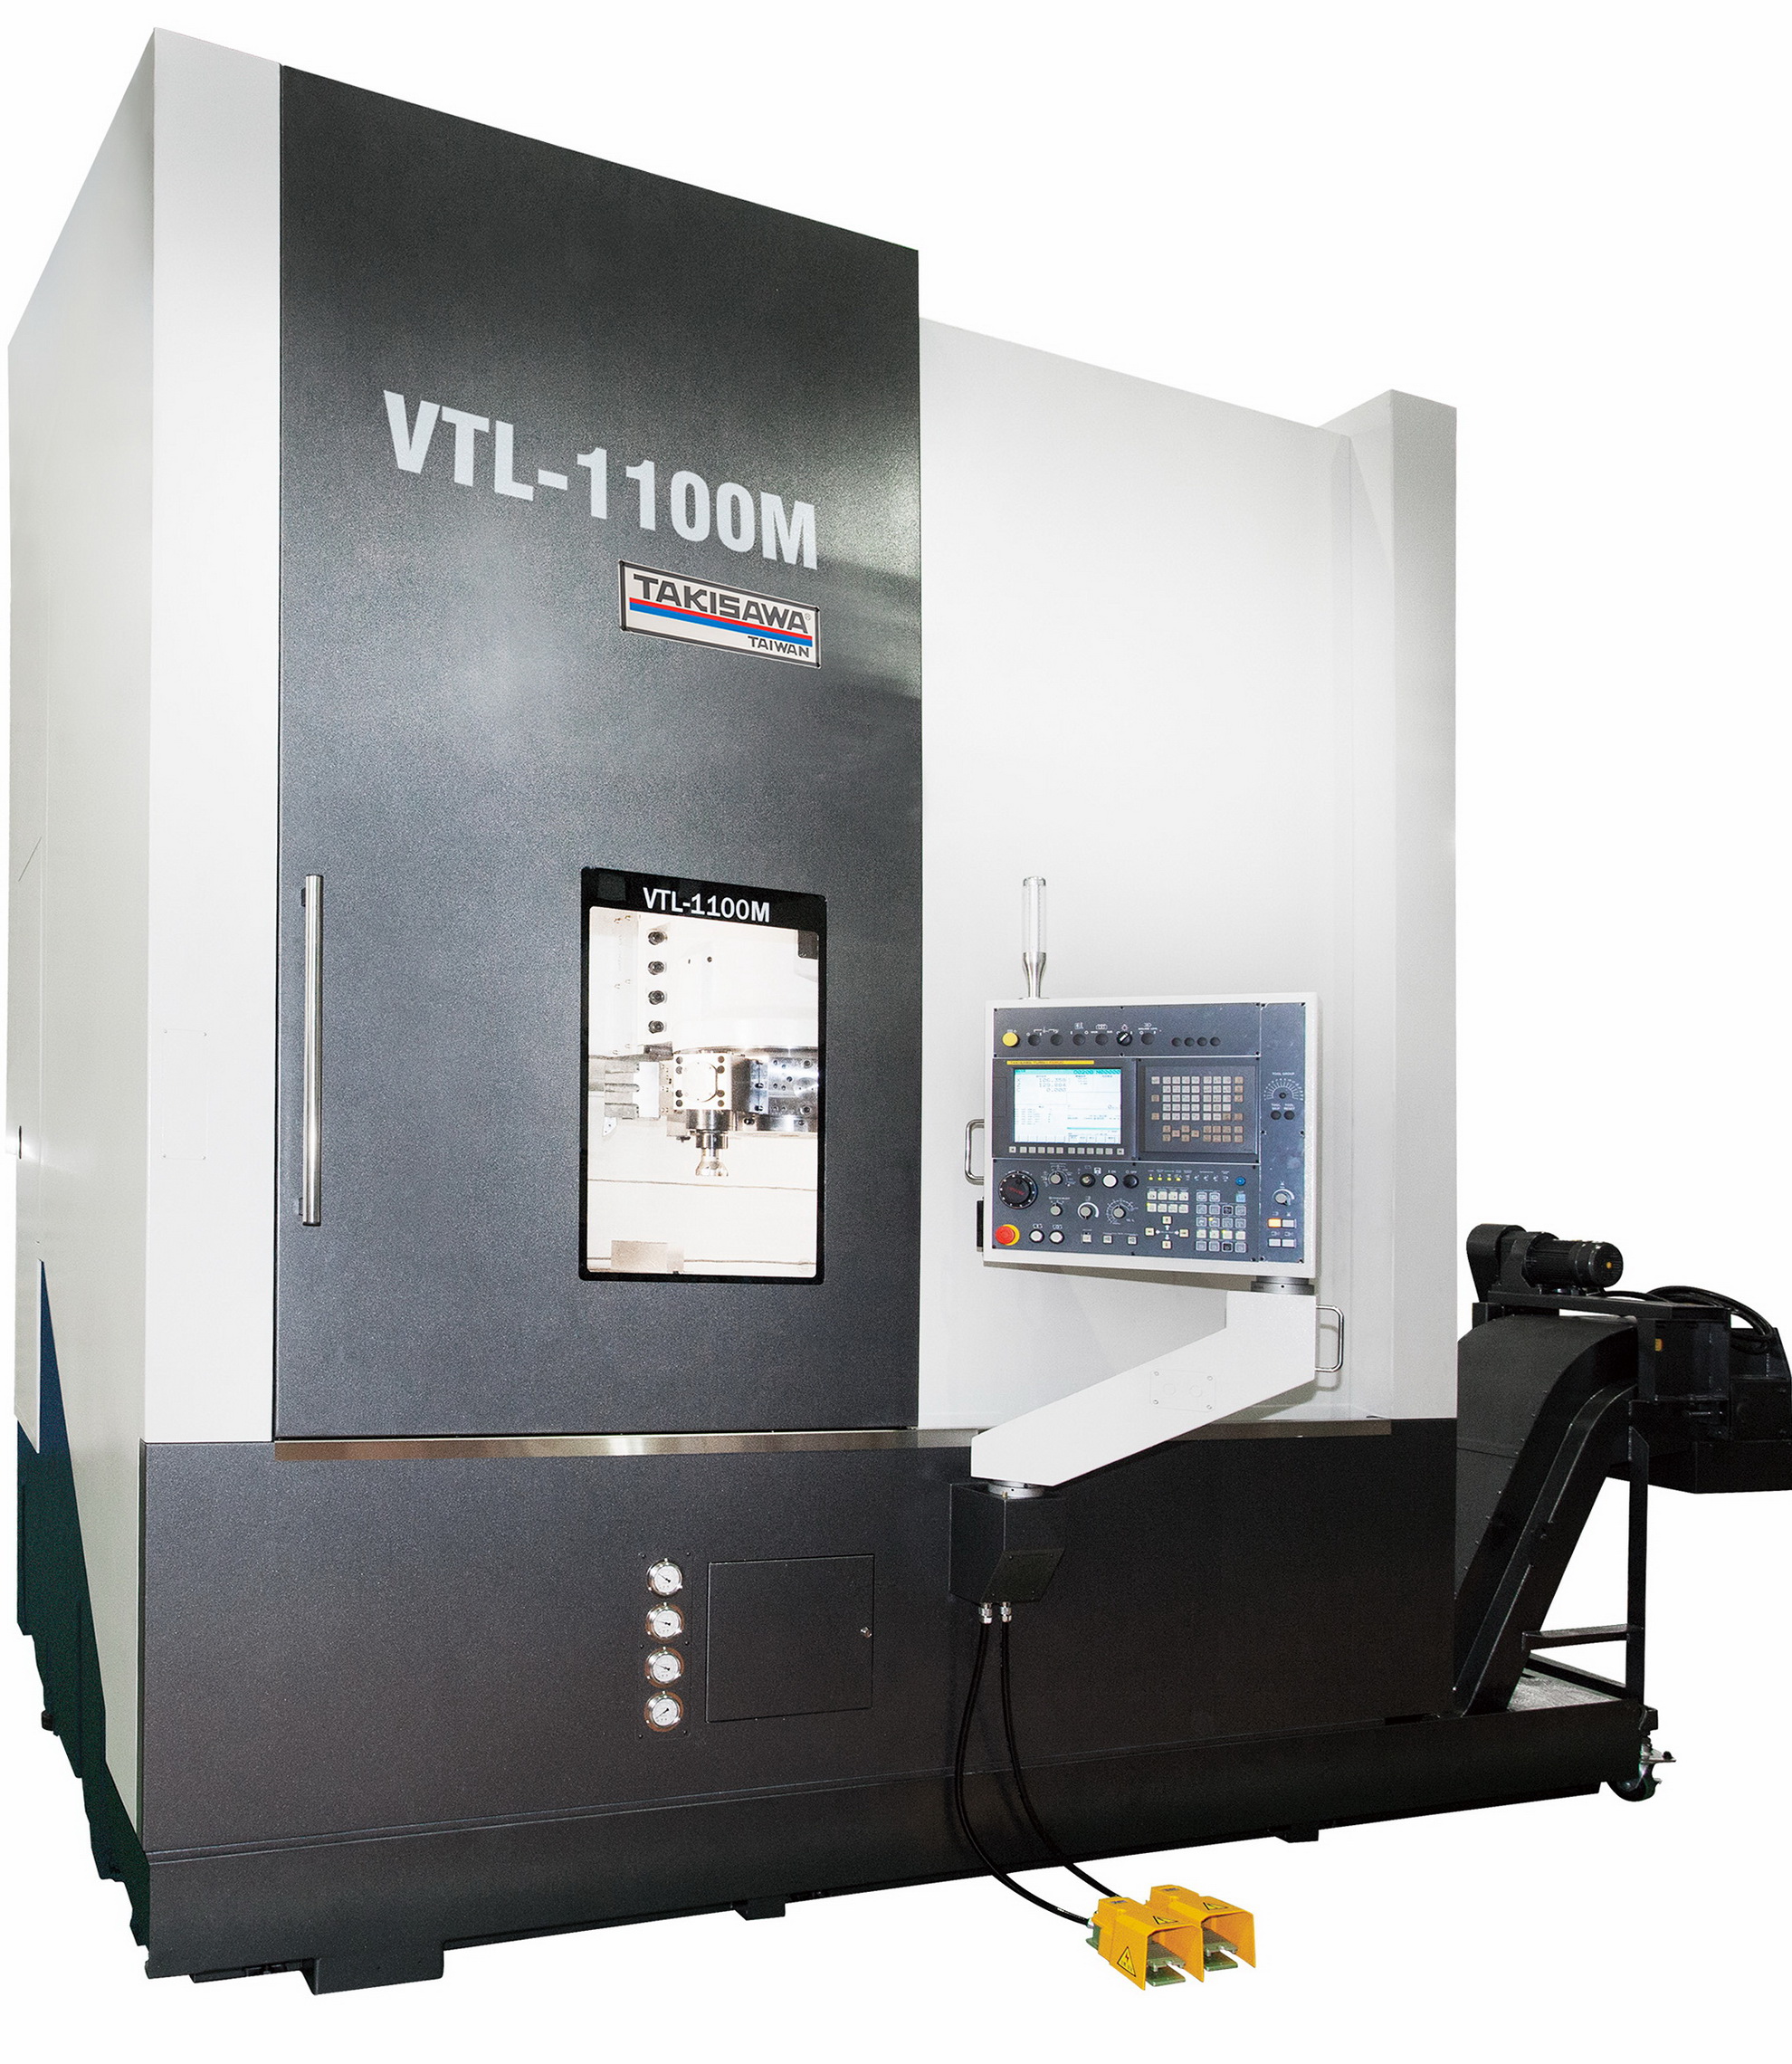 VTL-1100